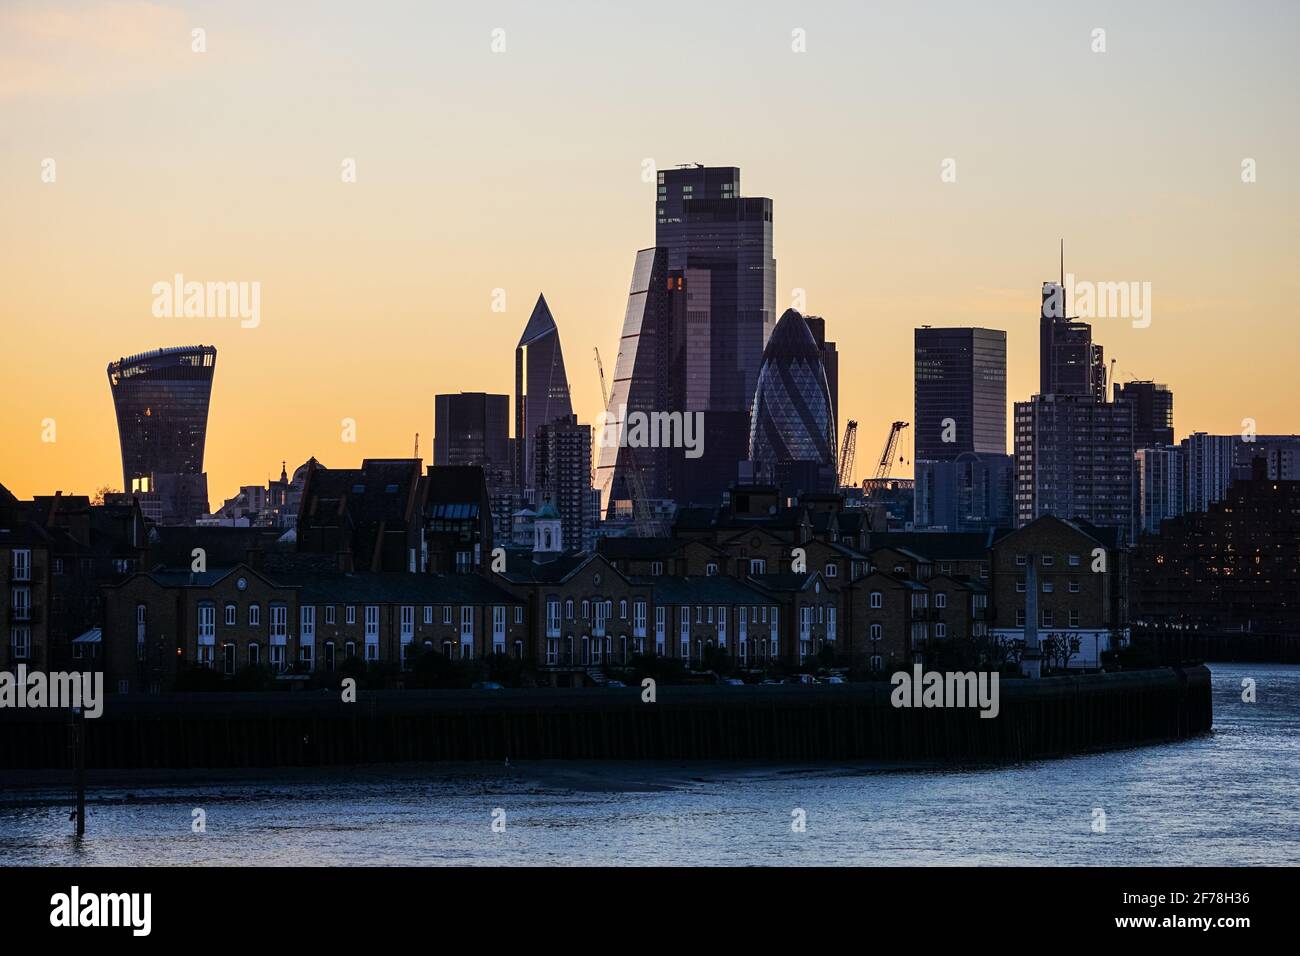 Silhouette des gratte-ciel de Londres City au coucher du soleil, Angleterre Royaume-Uni Banque D'Images